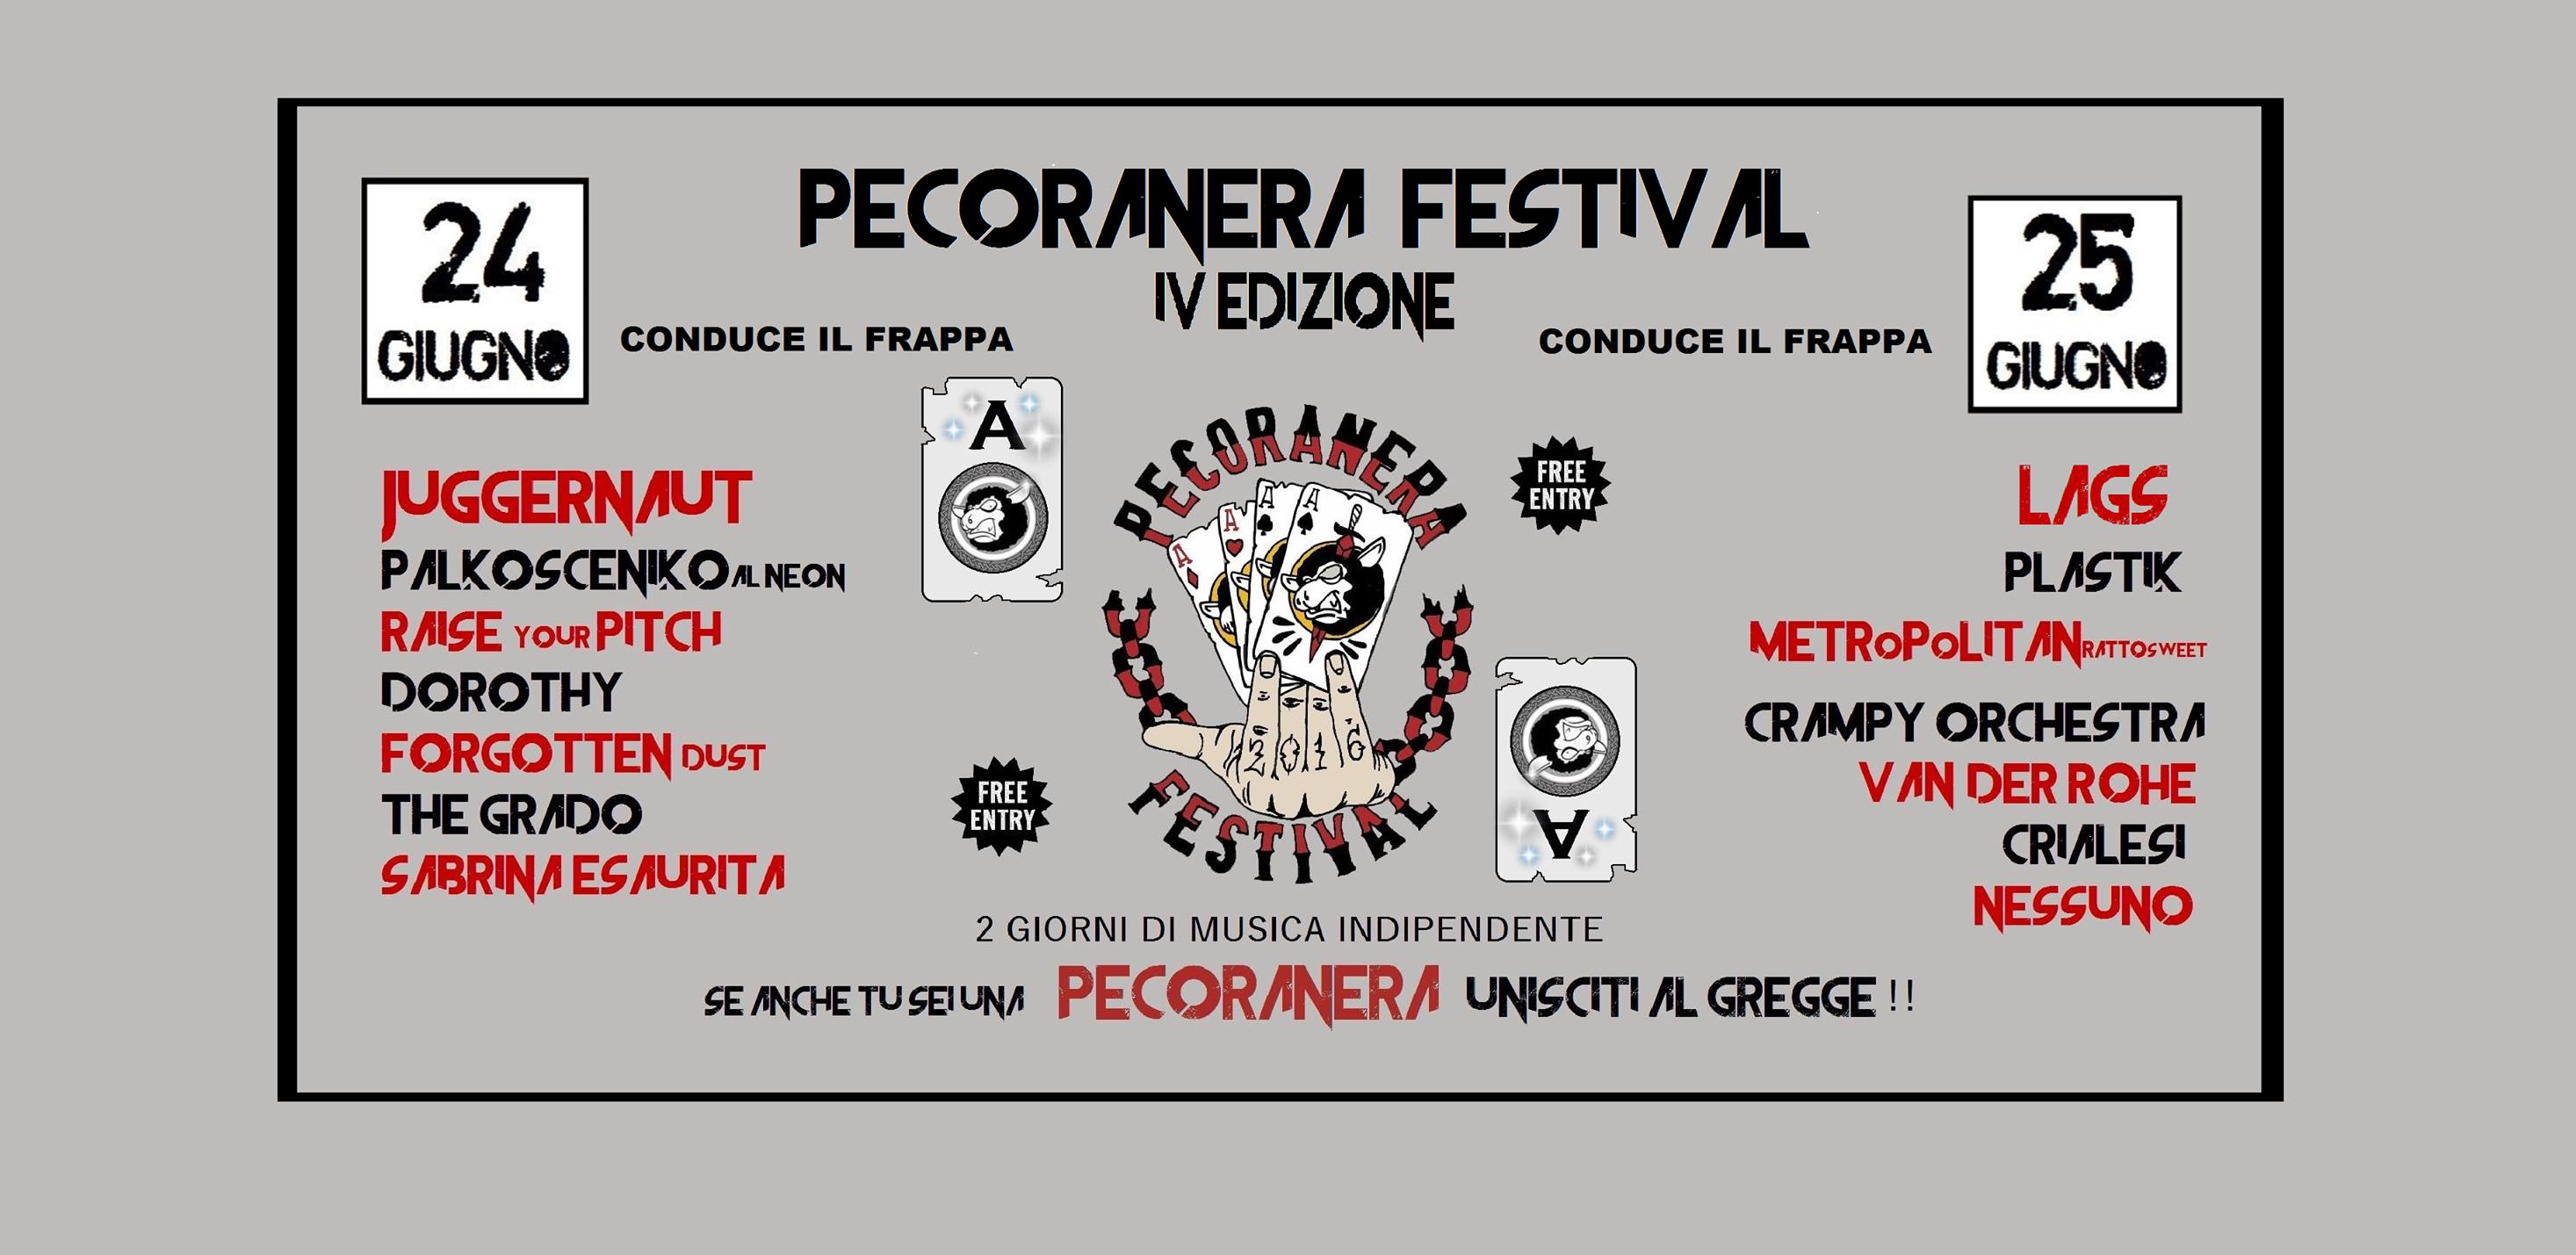 Pecora Nera Festival 2016